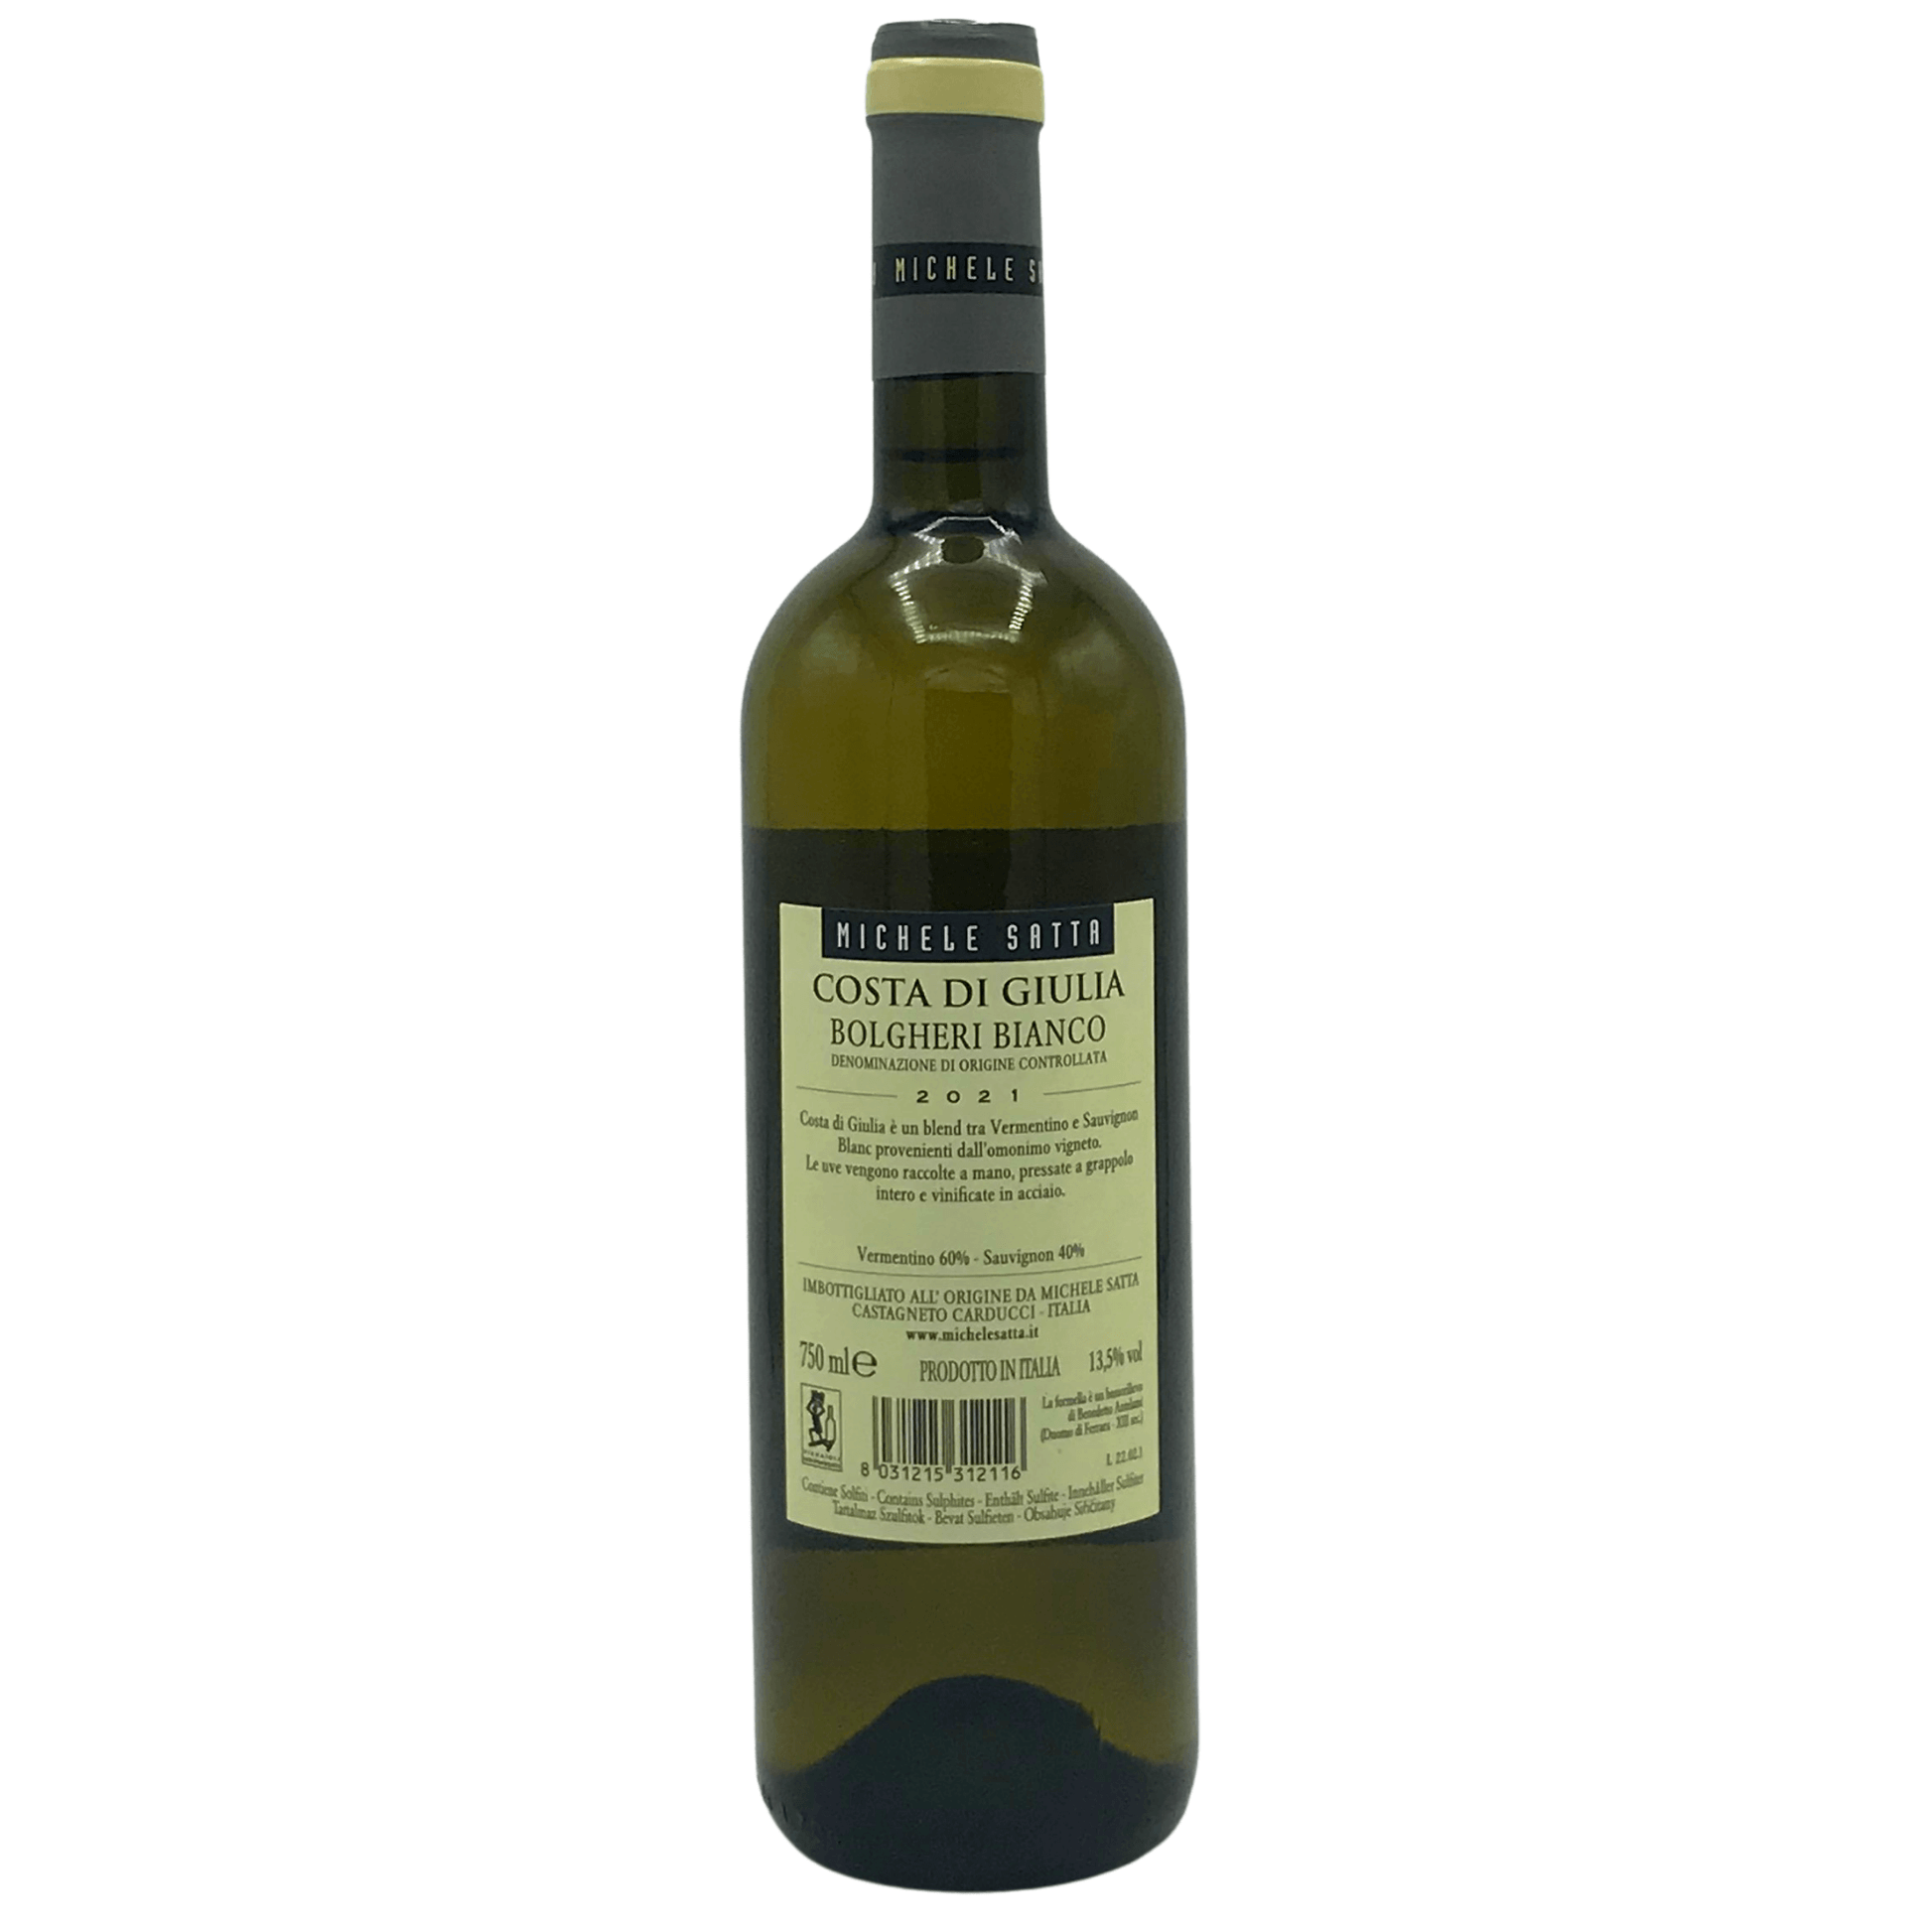 Retro della bottiglia di Bolgheri Costa di Giulia Michele Satta da 0,75 l.